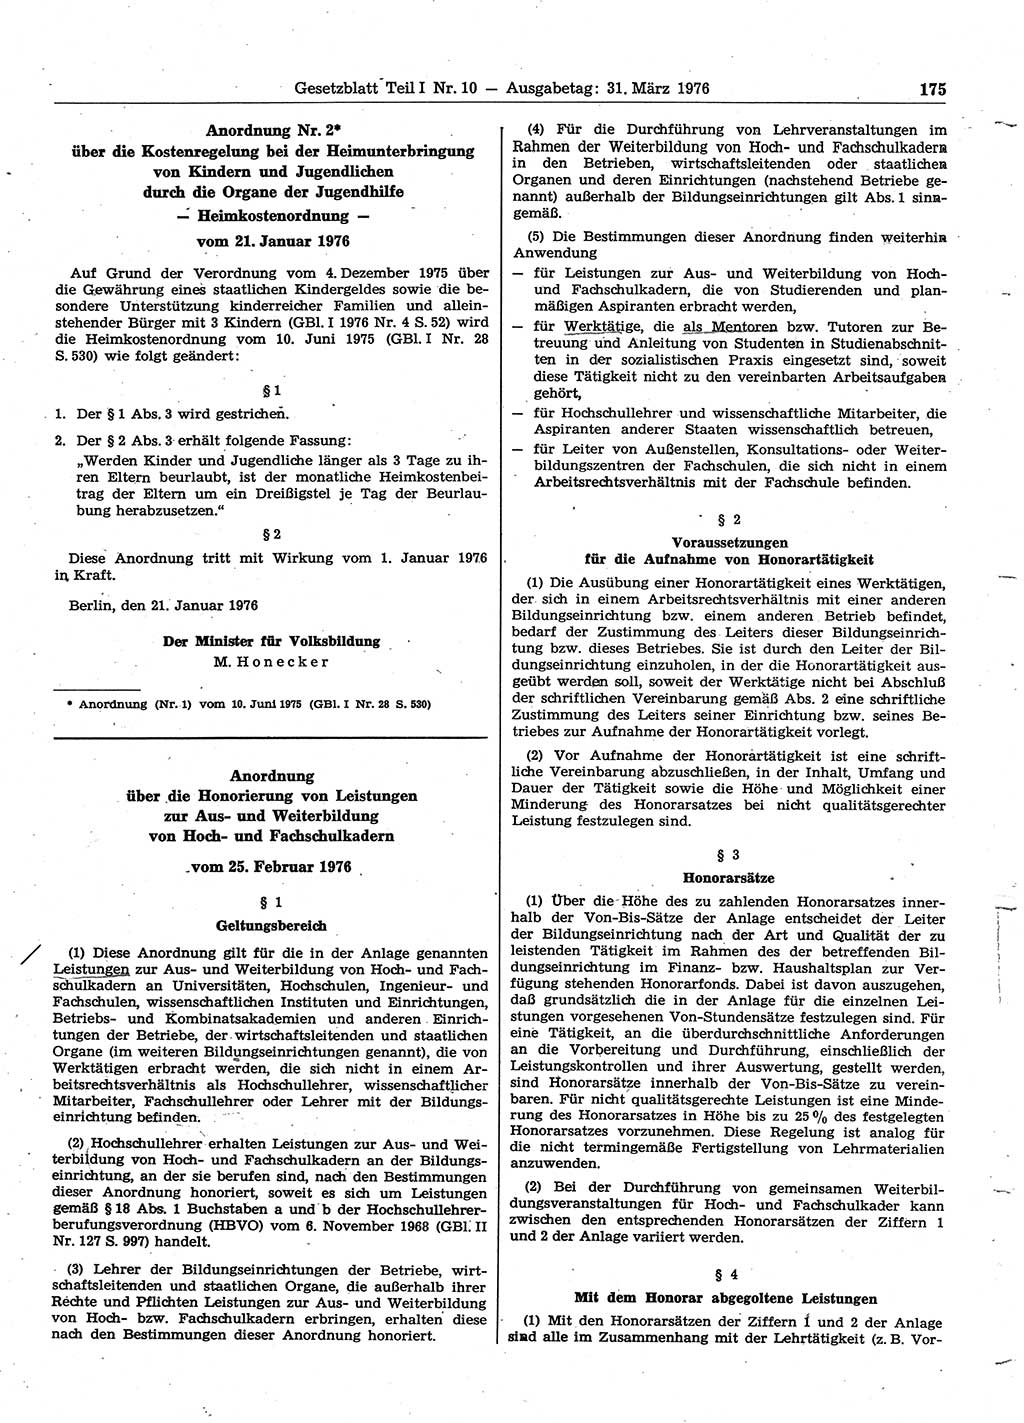 Gesetzblatt (GBl.) der Deutschen Demokratischen Republik (DDR) Teil Ⅰ 1976, Seite 175 (GBl. DDR Ⅰ 1976, S. 175)